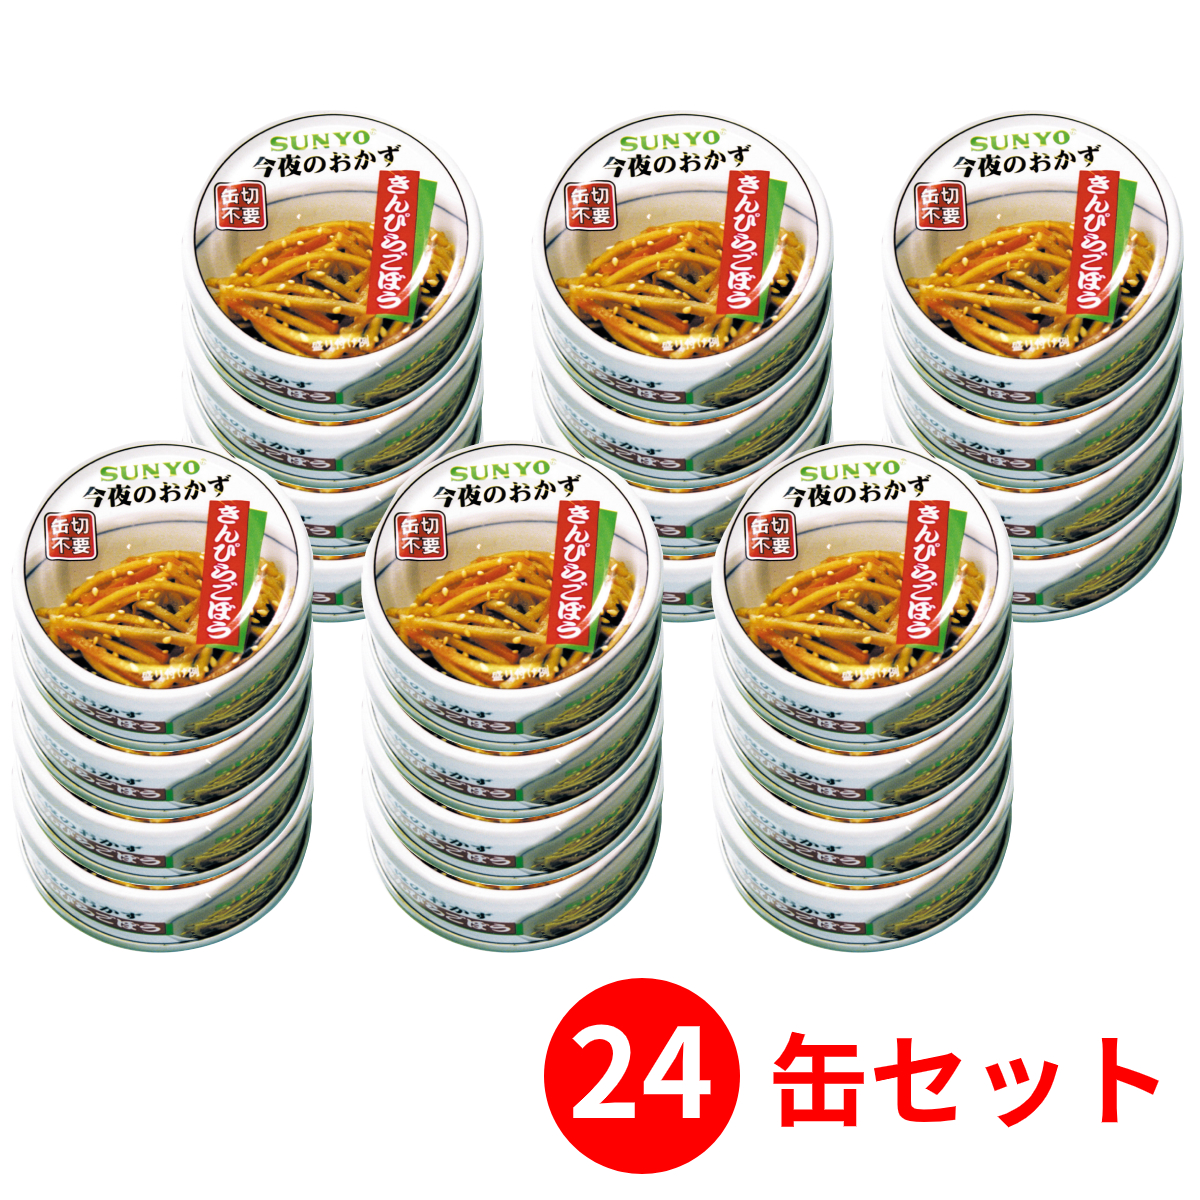 サンヨー堂 サンヨー おかず缶詰 きんぴらごぼう EOP4号 50g×24缶 缶詰の商品画像